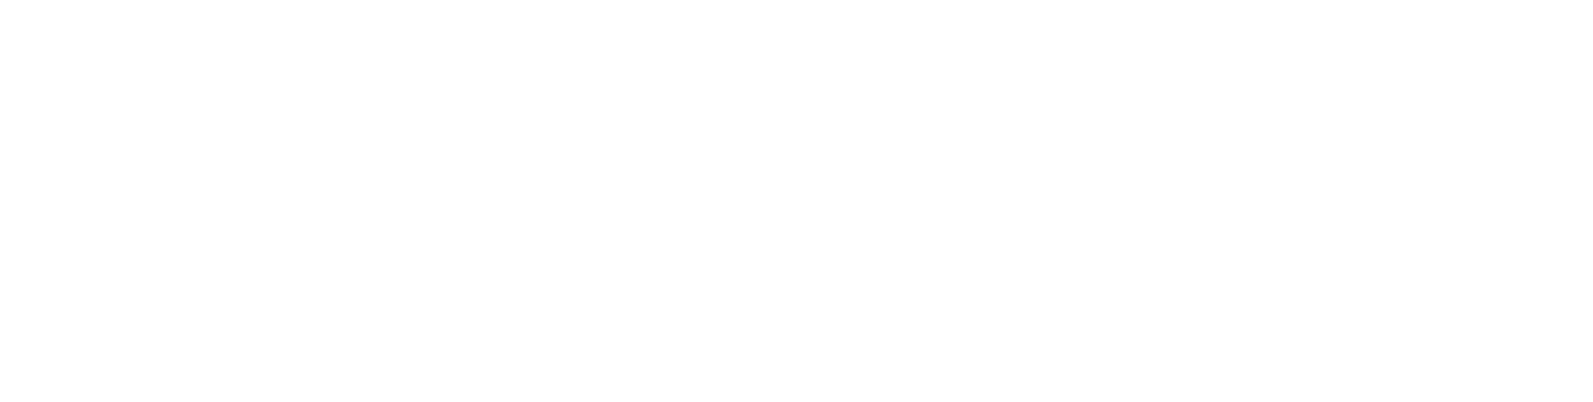 Hooker Furniture Logo groß für dunkle Hintergründe (transparentes PNG)